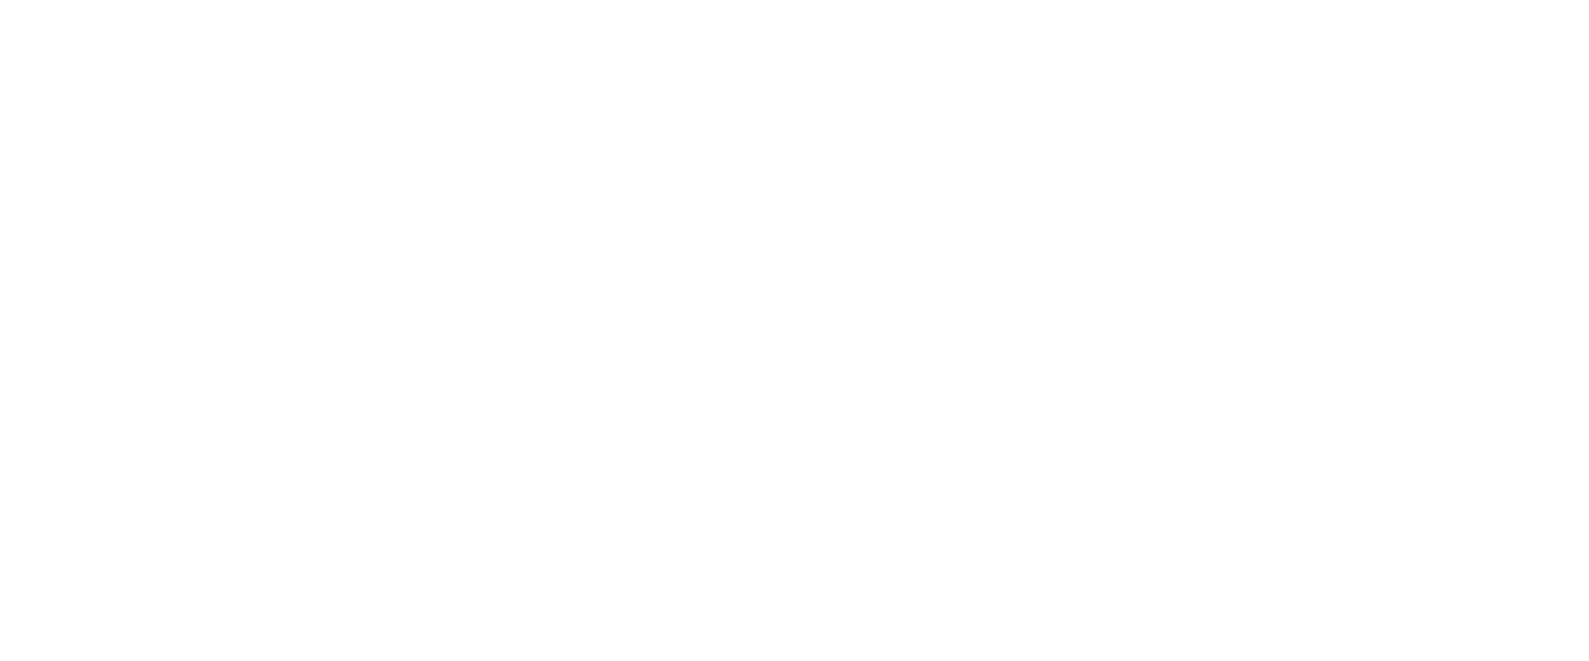 Power of Minus Nine